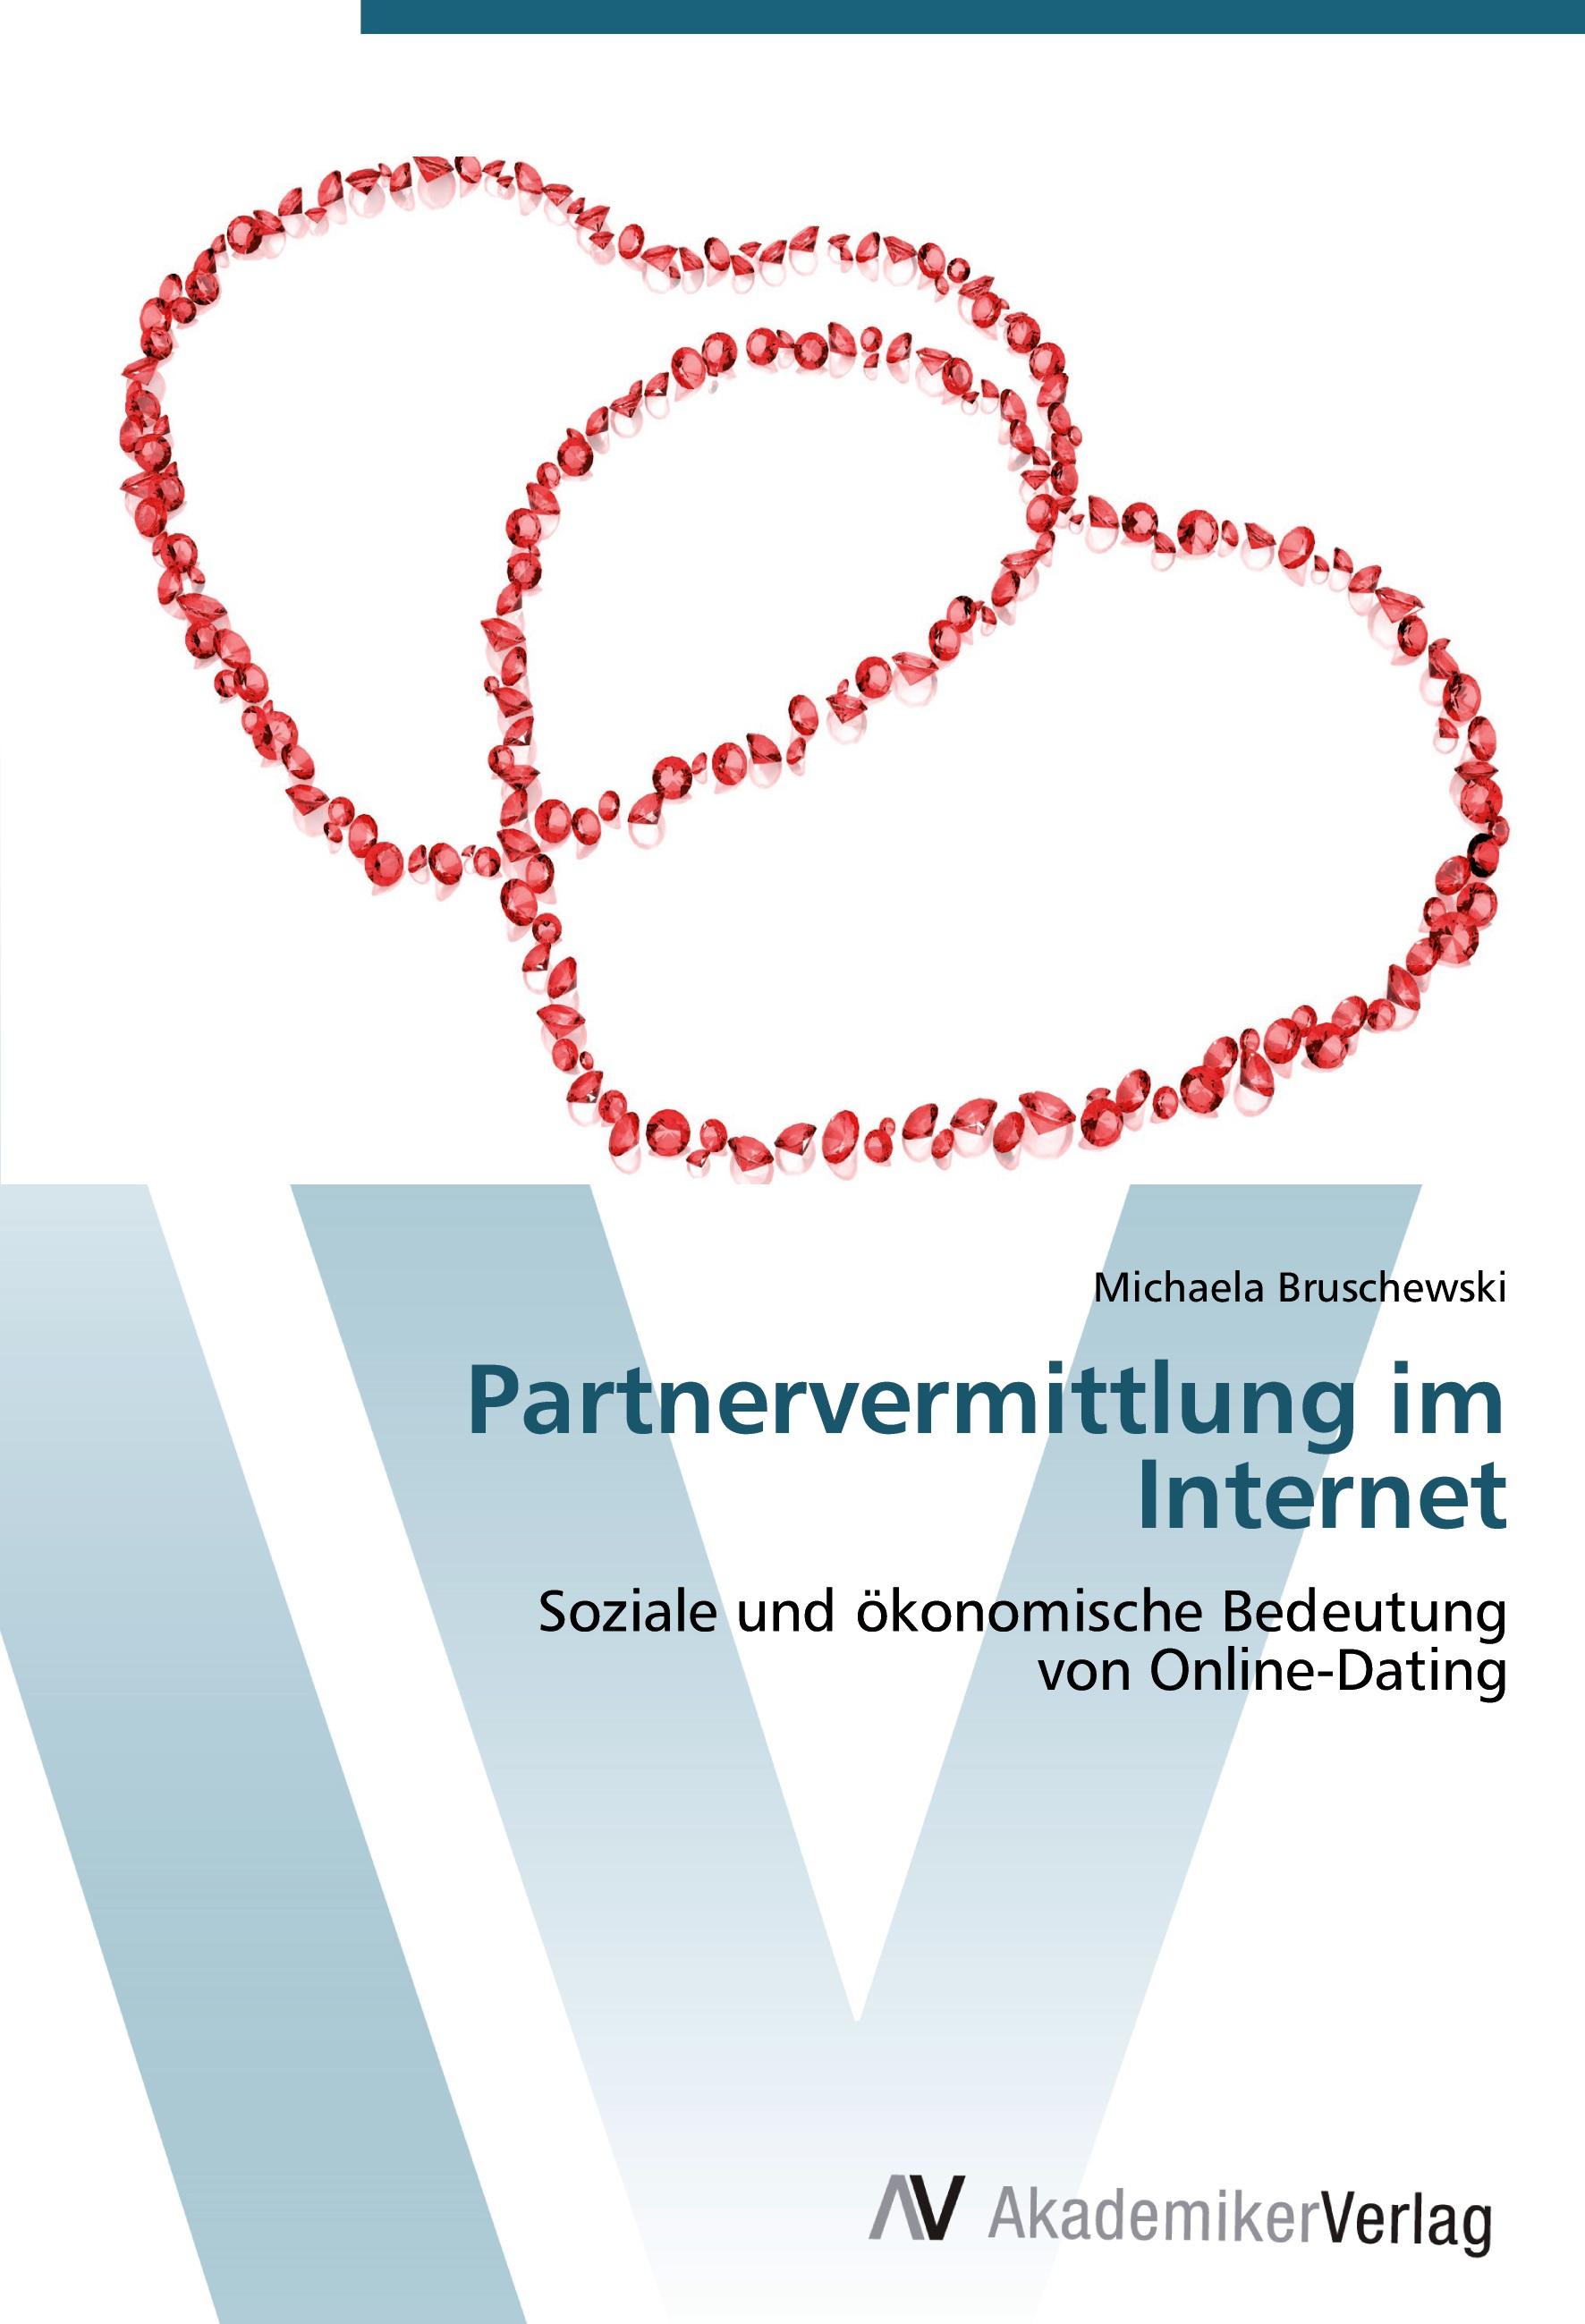 Partnervermittlung im Internet - Michaela Bruschewski